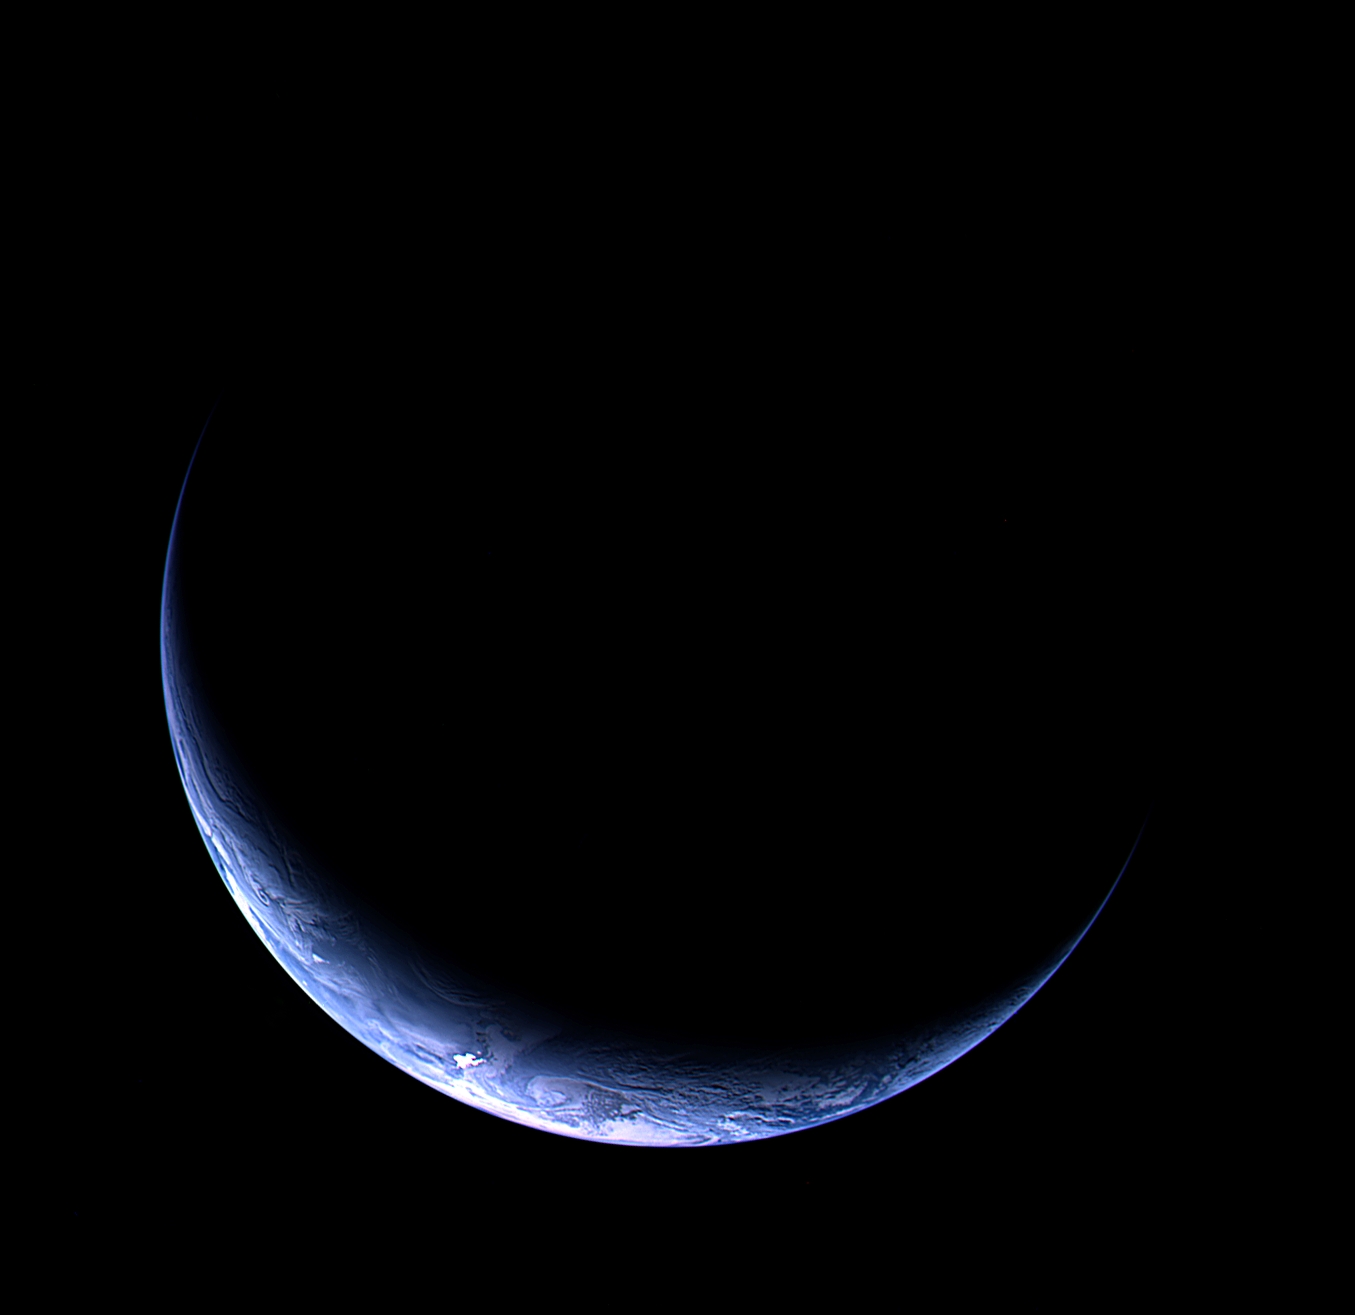 La beauté du croissant de Terre saisi par la sonde Rosetta. © ESA 2009 MPS pour OSIRIS Team MPS / UPD / LAM / IAA / RSSD / INTA / UPM / DASP / IDA
